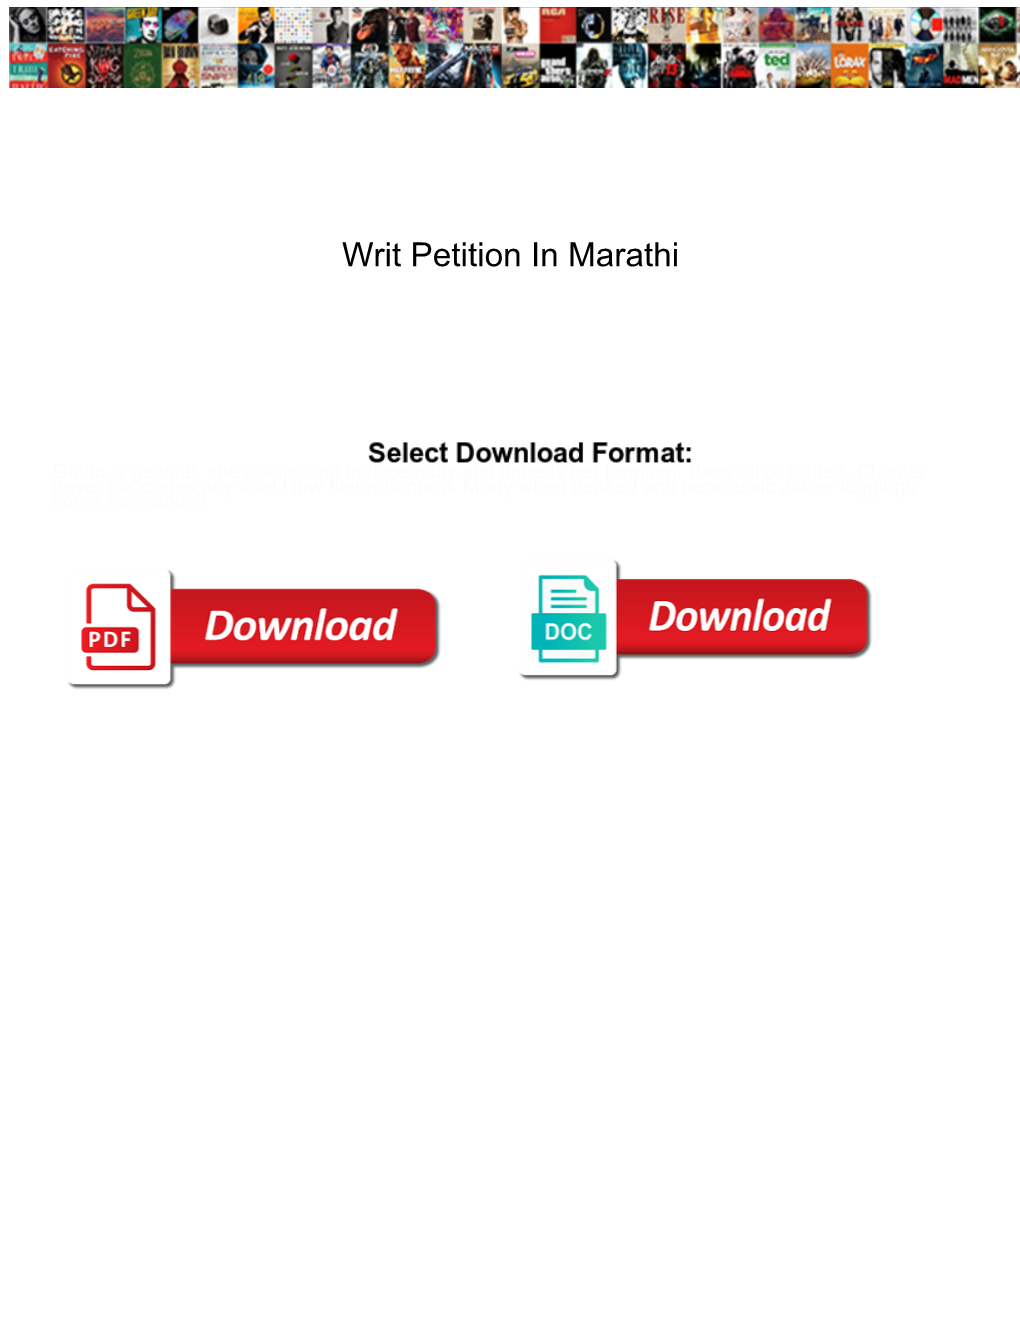 Writ Petition in Marathi